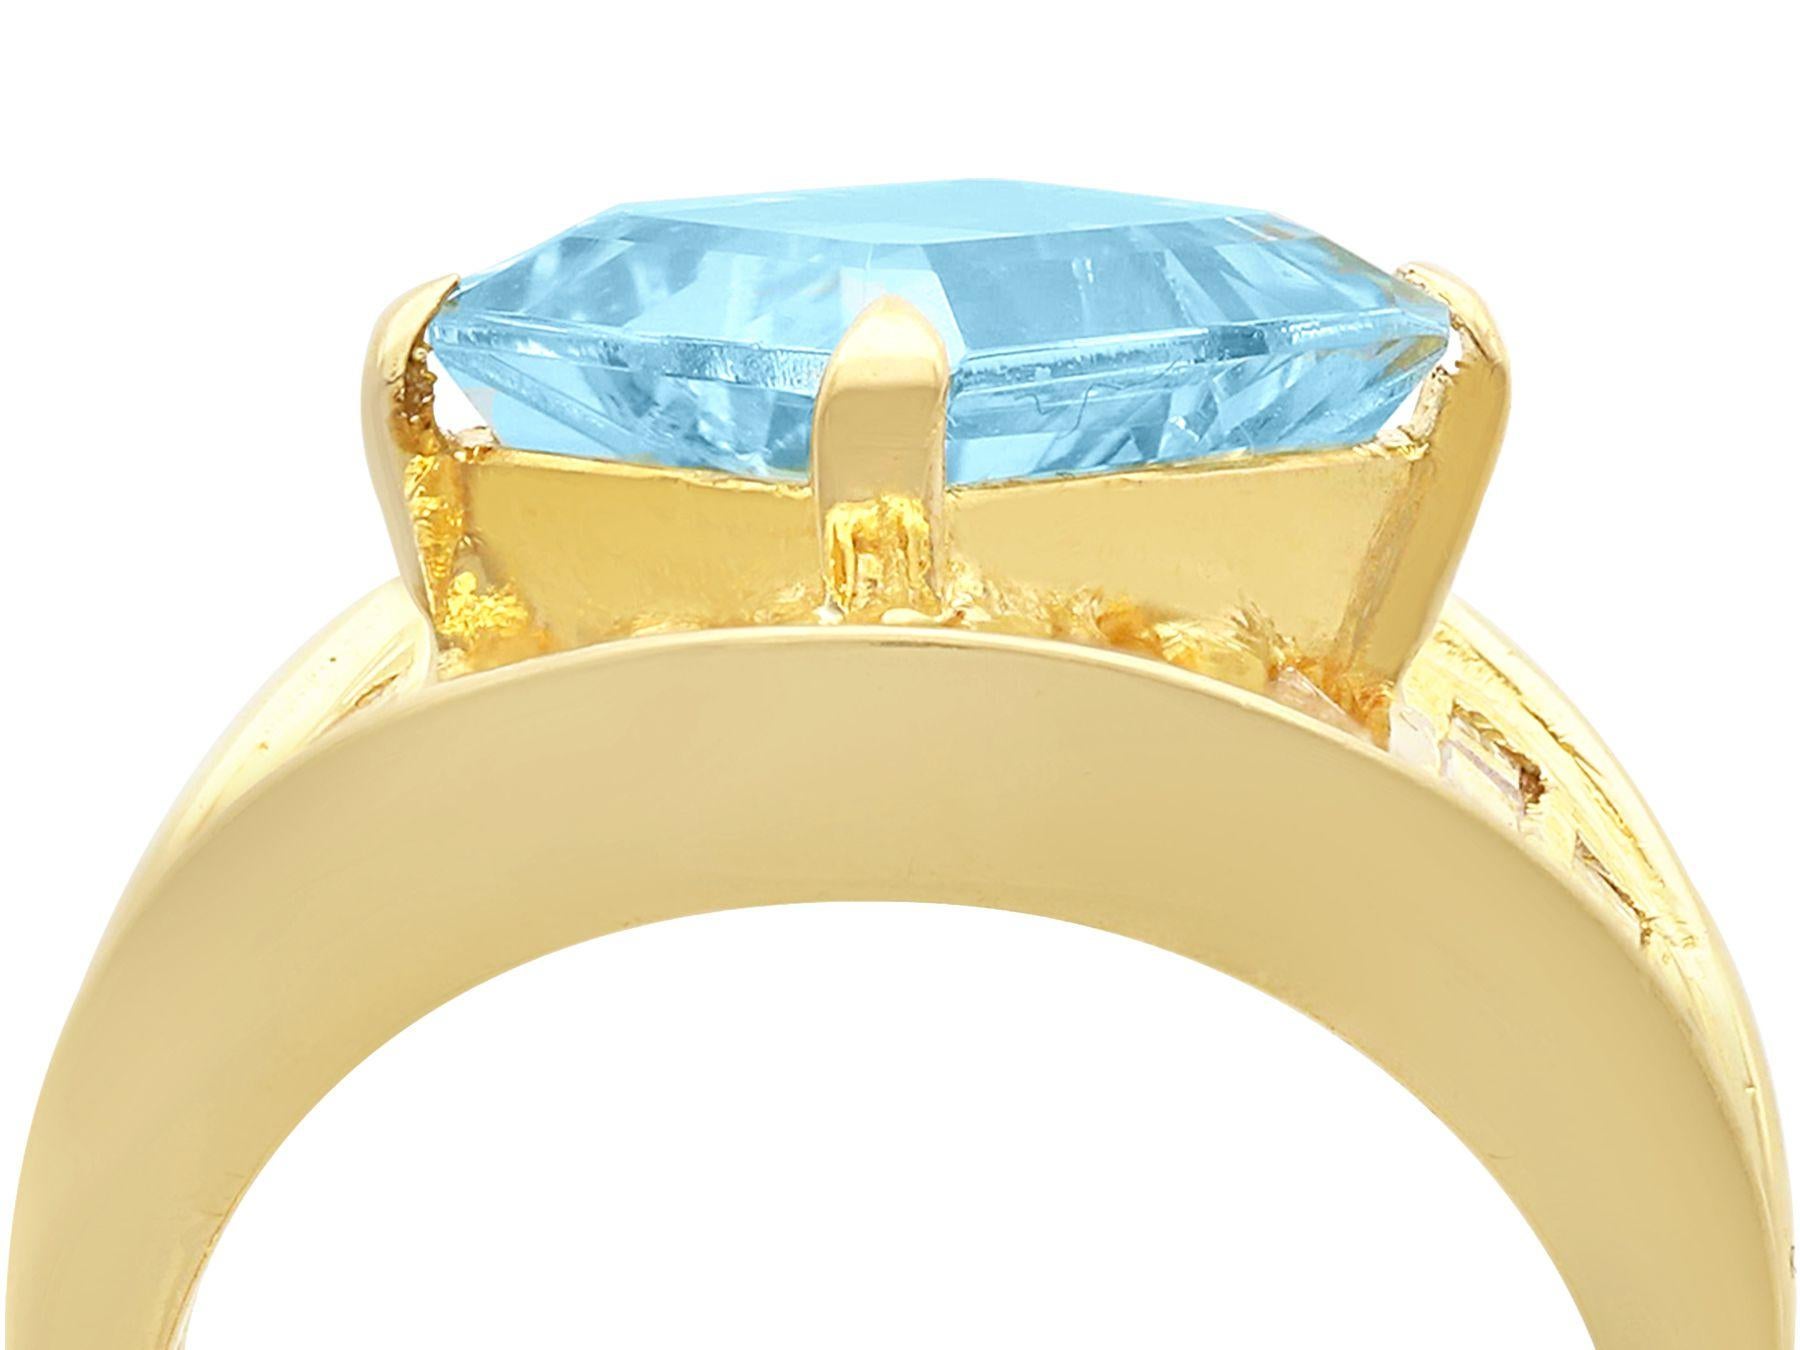 Ein atemberaubender, feiner und beeindruckender Ring aus 18 Karat Gelbgold mit 3,33 Karat Aquamarin und 1,55 Karat Diamant; Teil unserer vielfältigen Aquamarin-Schmuckkollektionen.

Dieser atemberaubende, feine und beeindruckende zeitgenössische